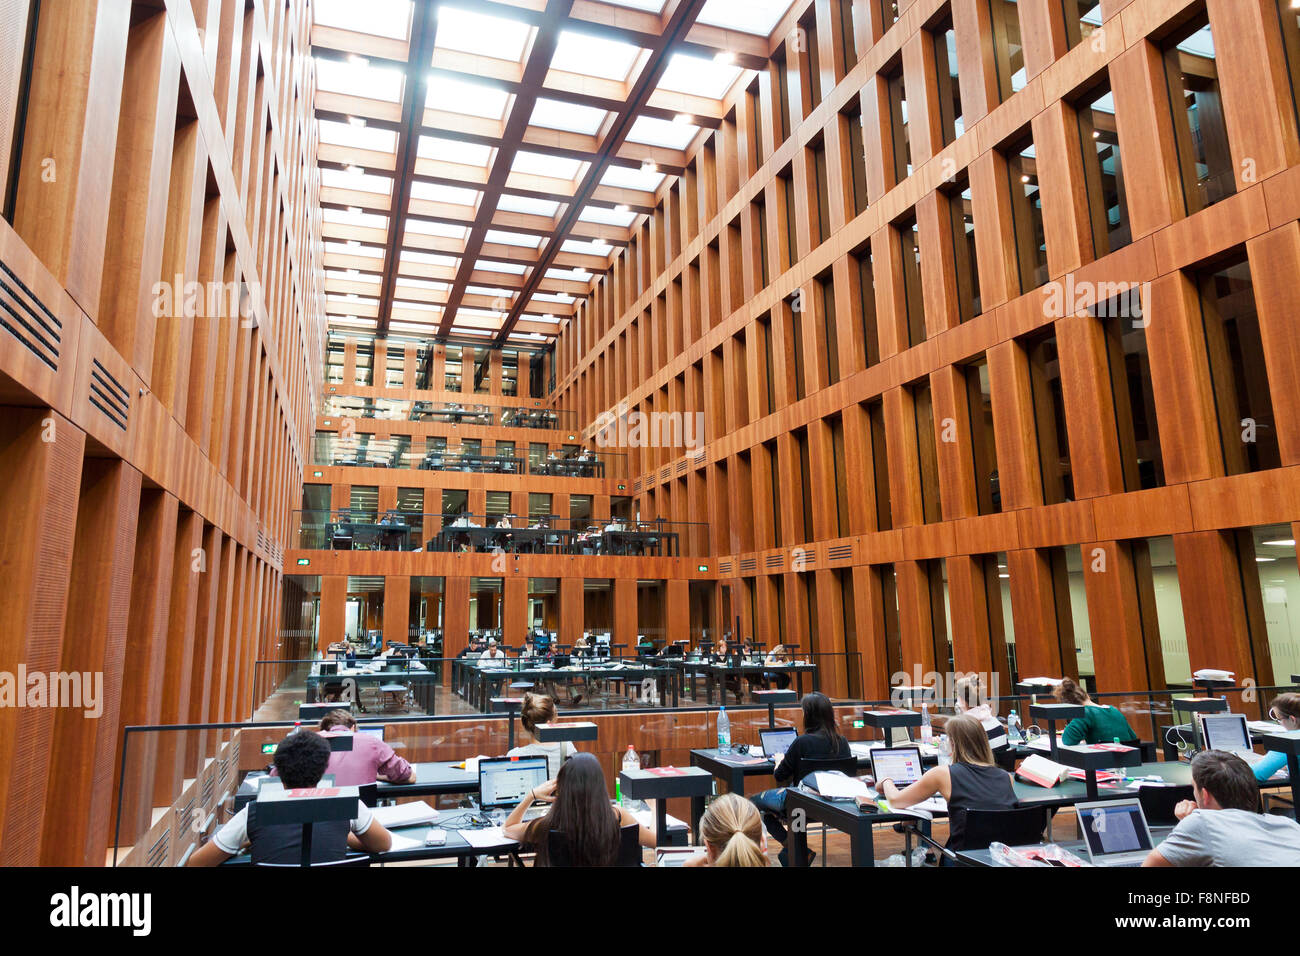 Berlín, Alemania - 1 de julio de 2014: La Biblioteca de la Universidad de Humboldt en Berlín. Es una de las bibliotecas científicas más avanzadas en Alemania Foto de stock